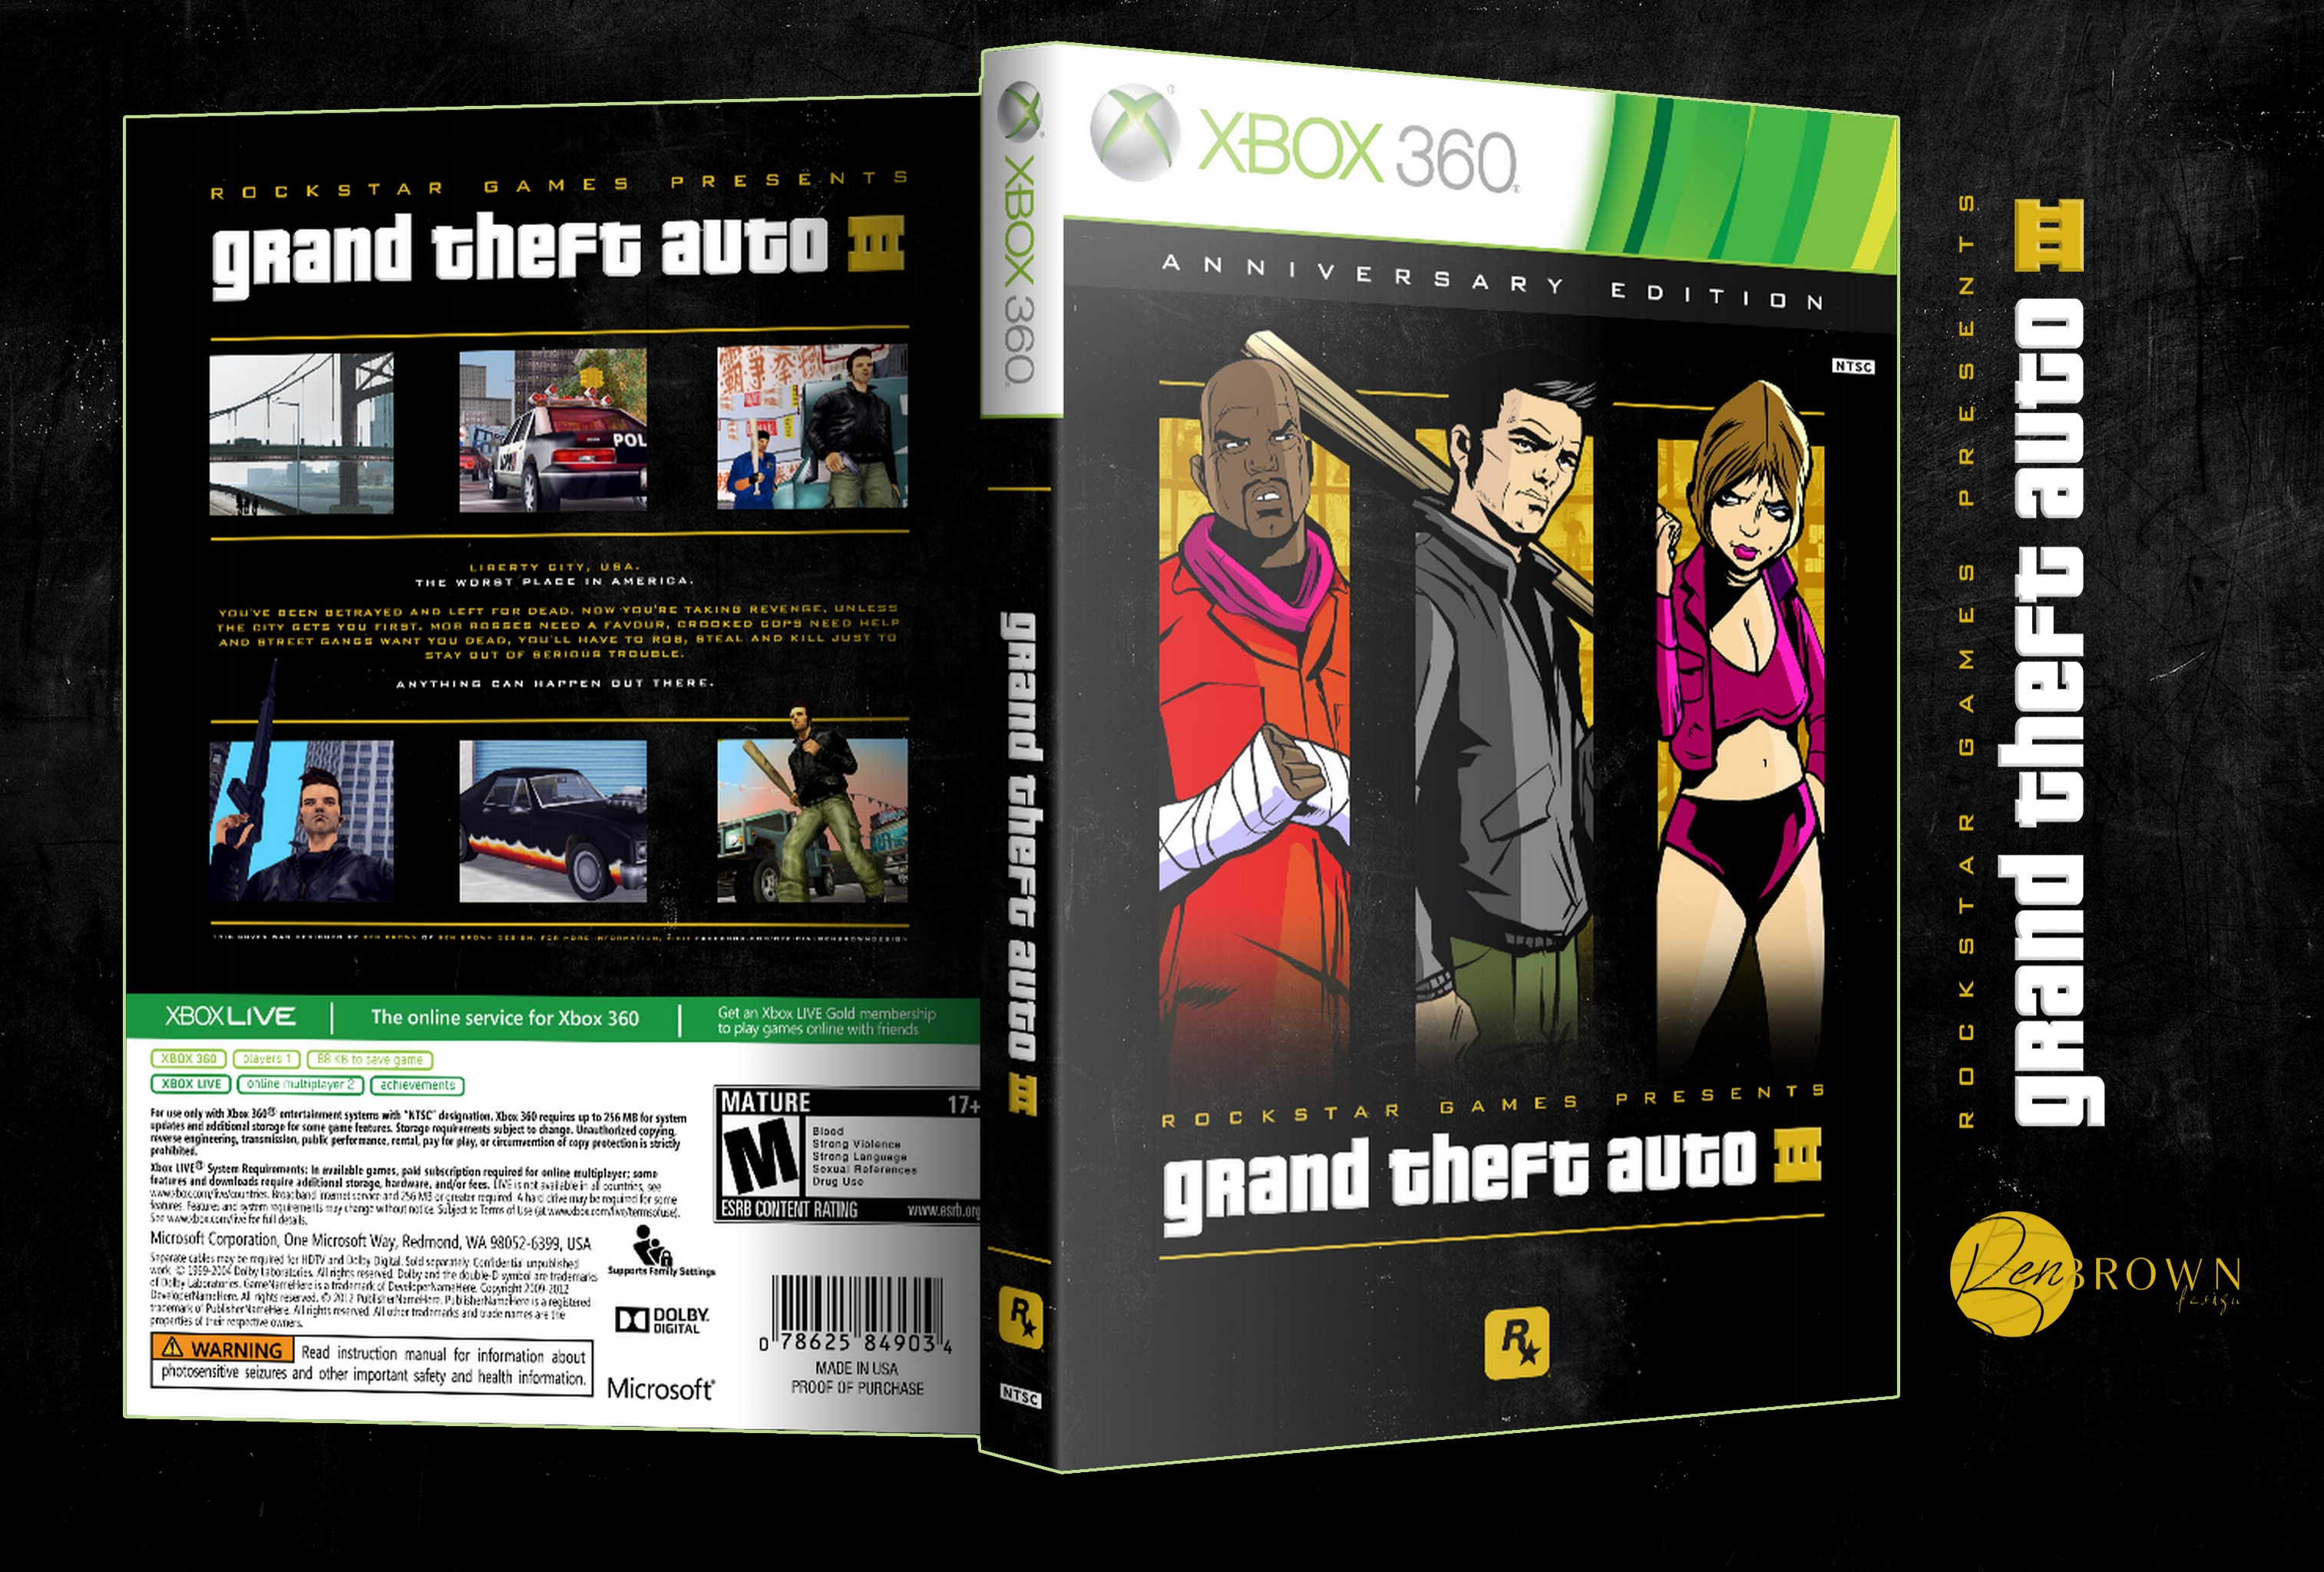 Grand Theft Auto III: Anniversary Edition box cover